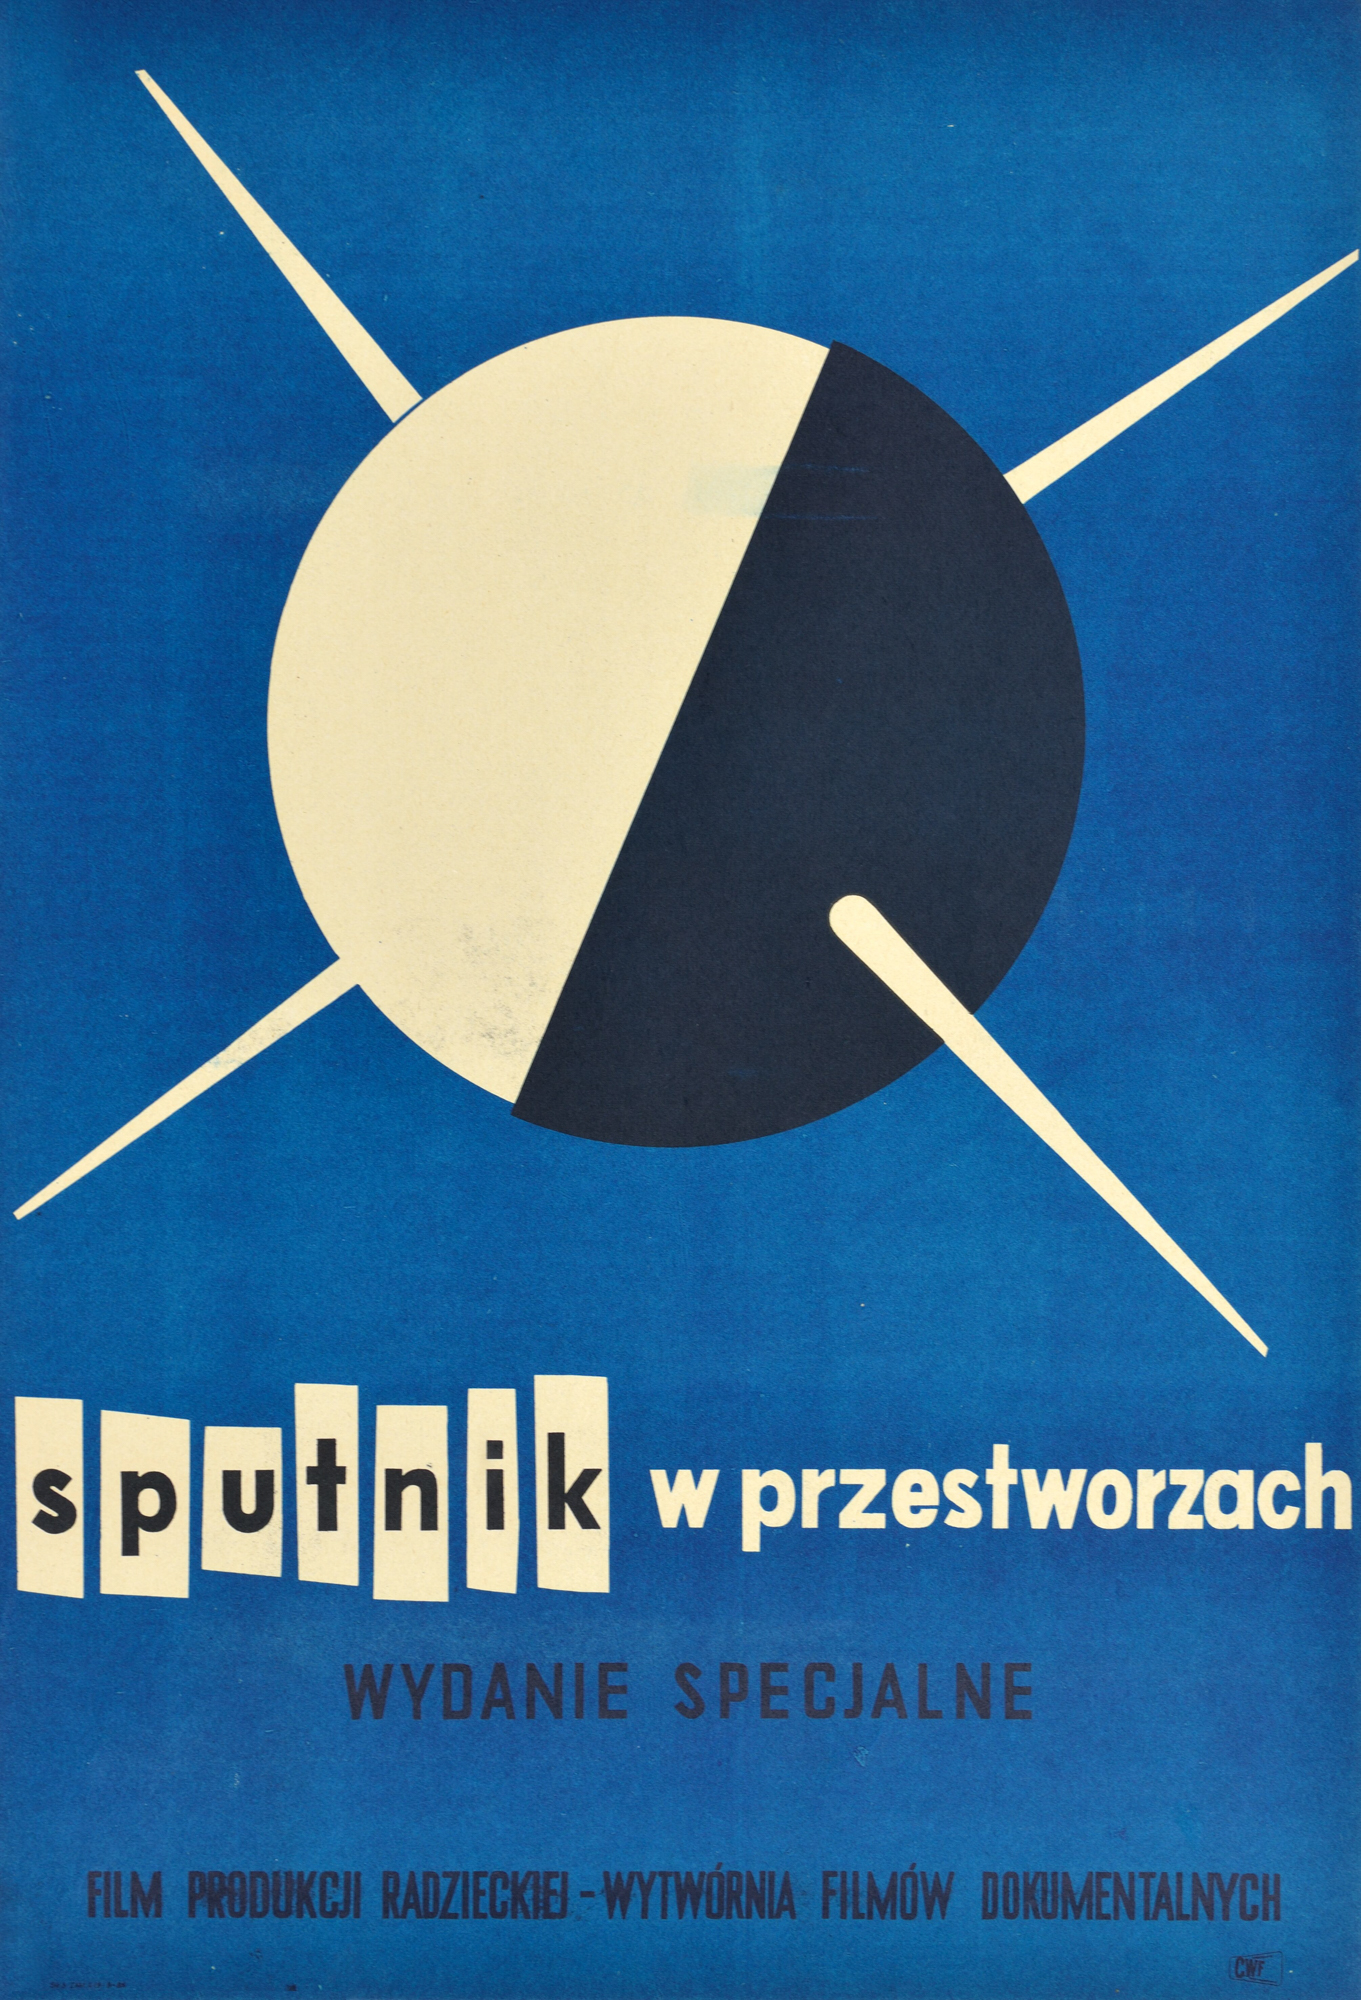 Wojciech Fangor: Sputnik w przestworzach, 1957